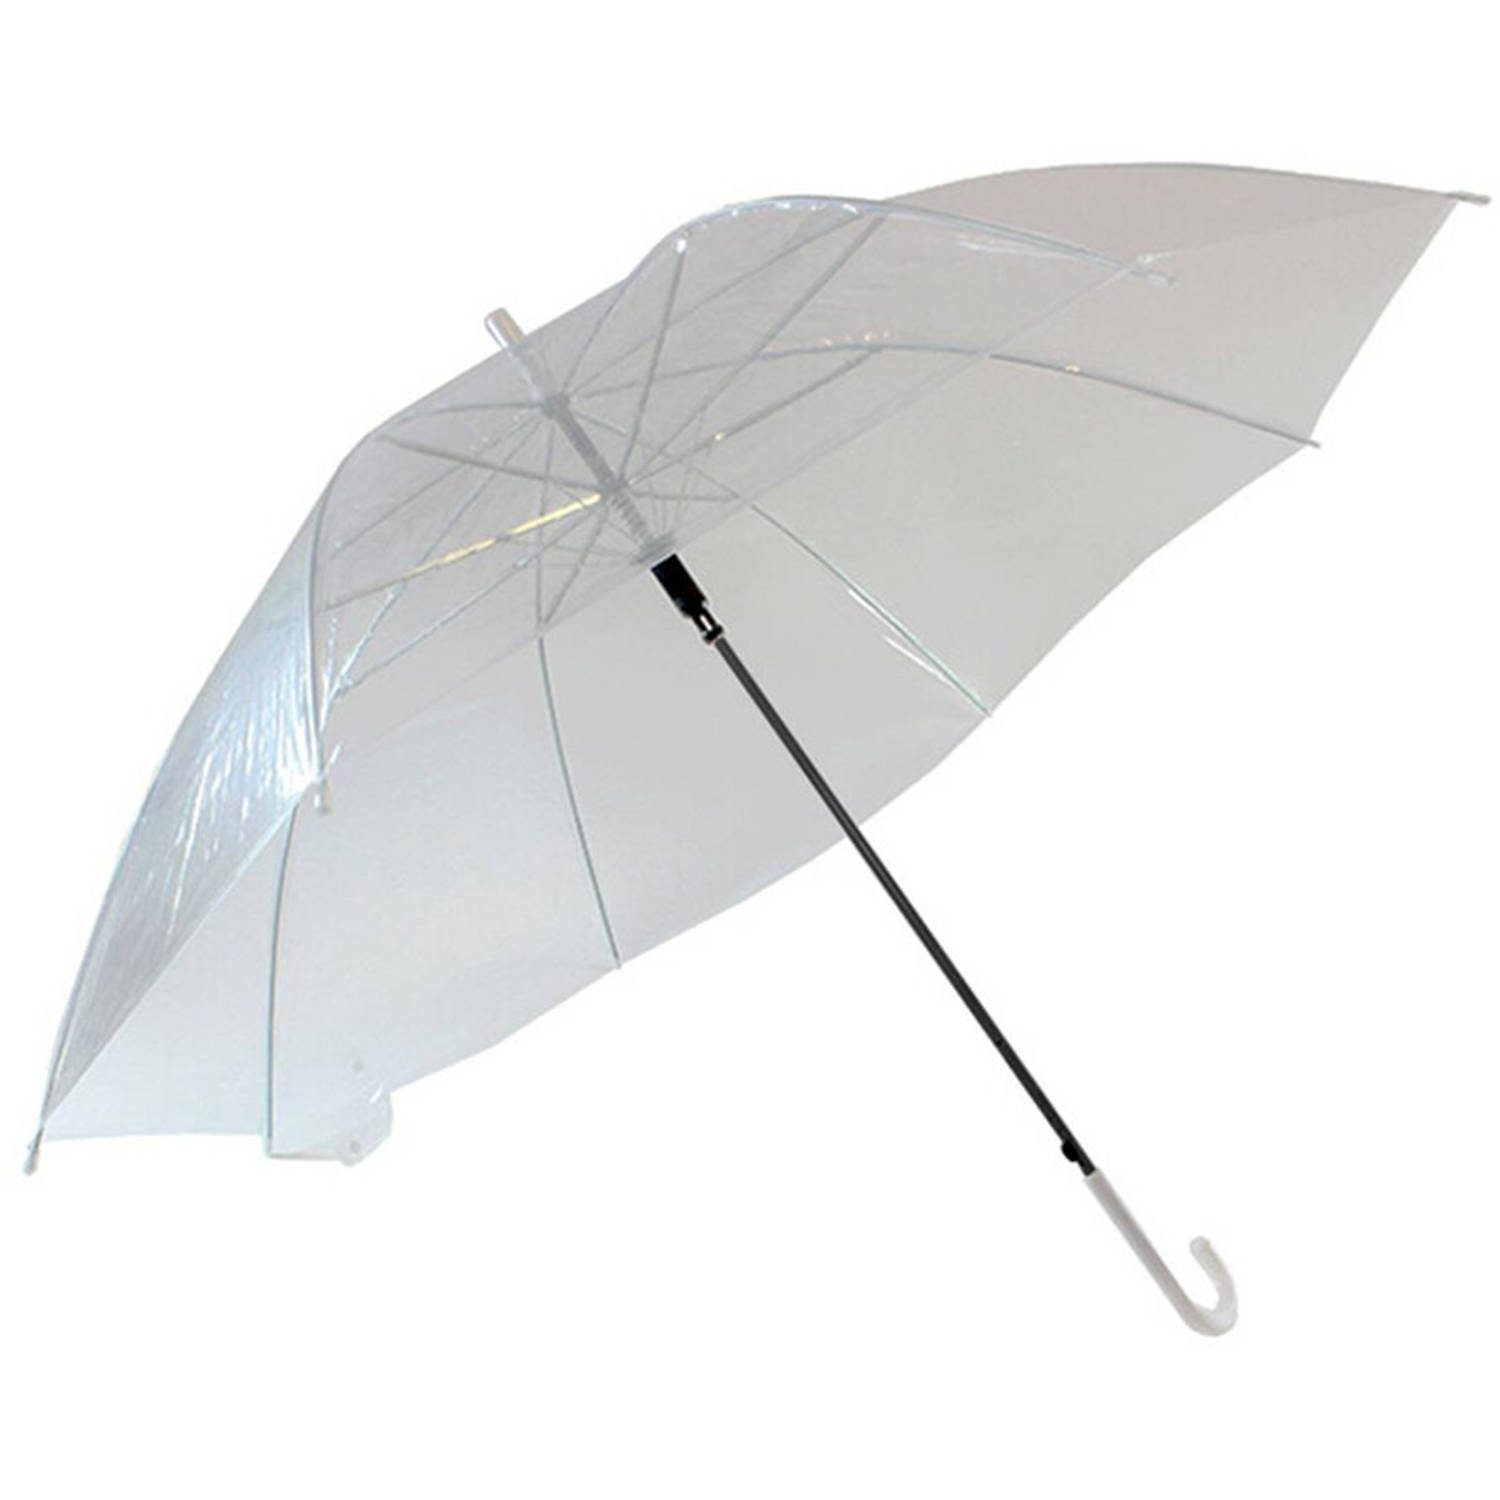 Paraplu - Aptoza Plu - Opvouwbaar - Transparant Wit - Doorzichtige Paraplu - Ø107cm